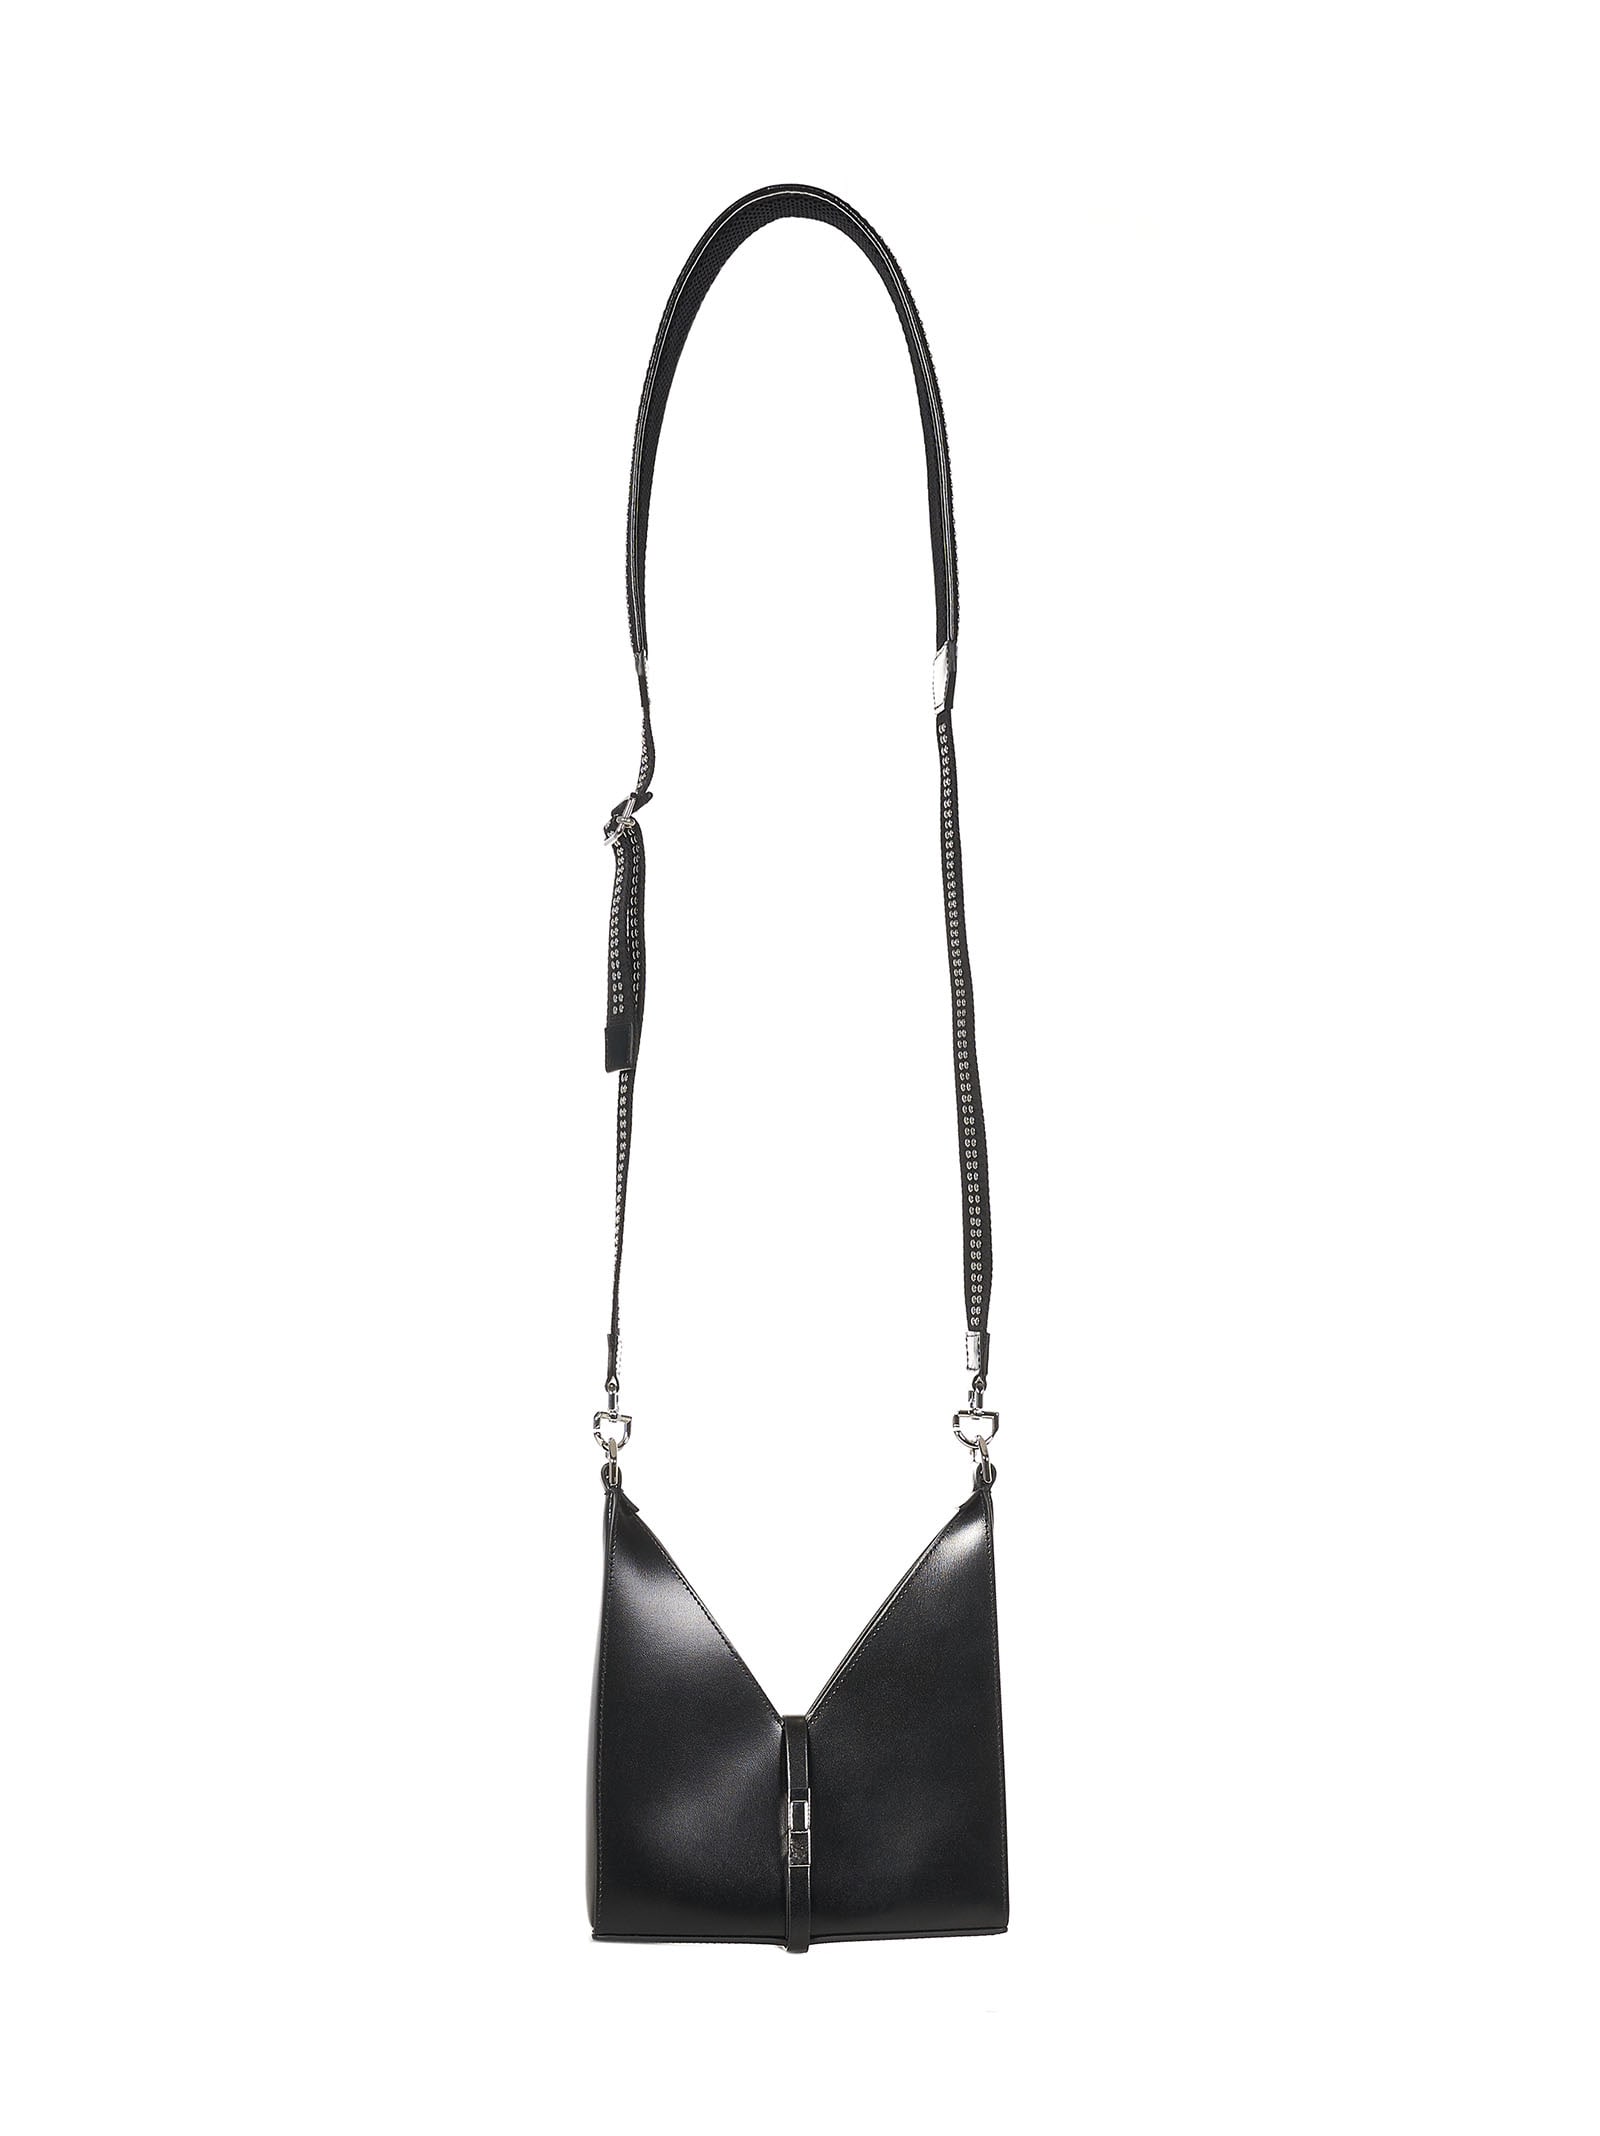 Givenchy Cut-out Shoulder Bag